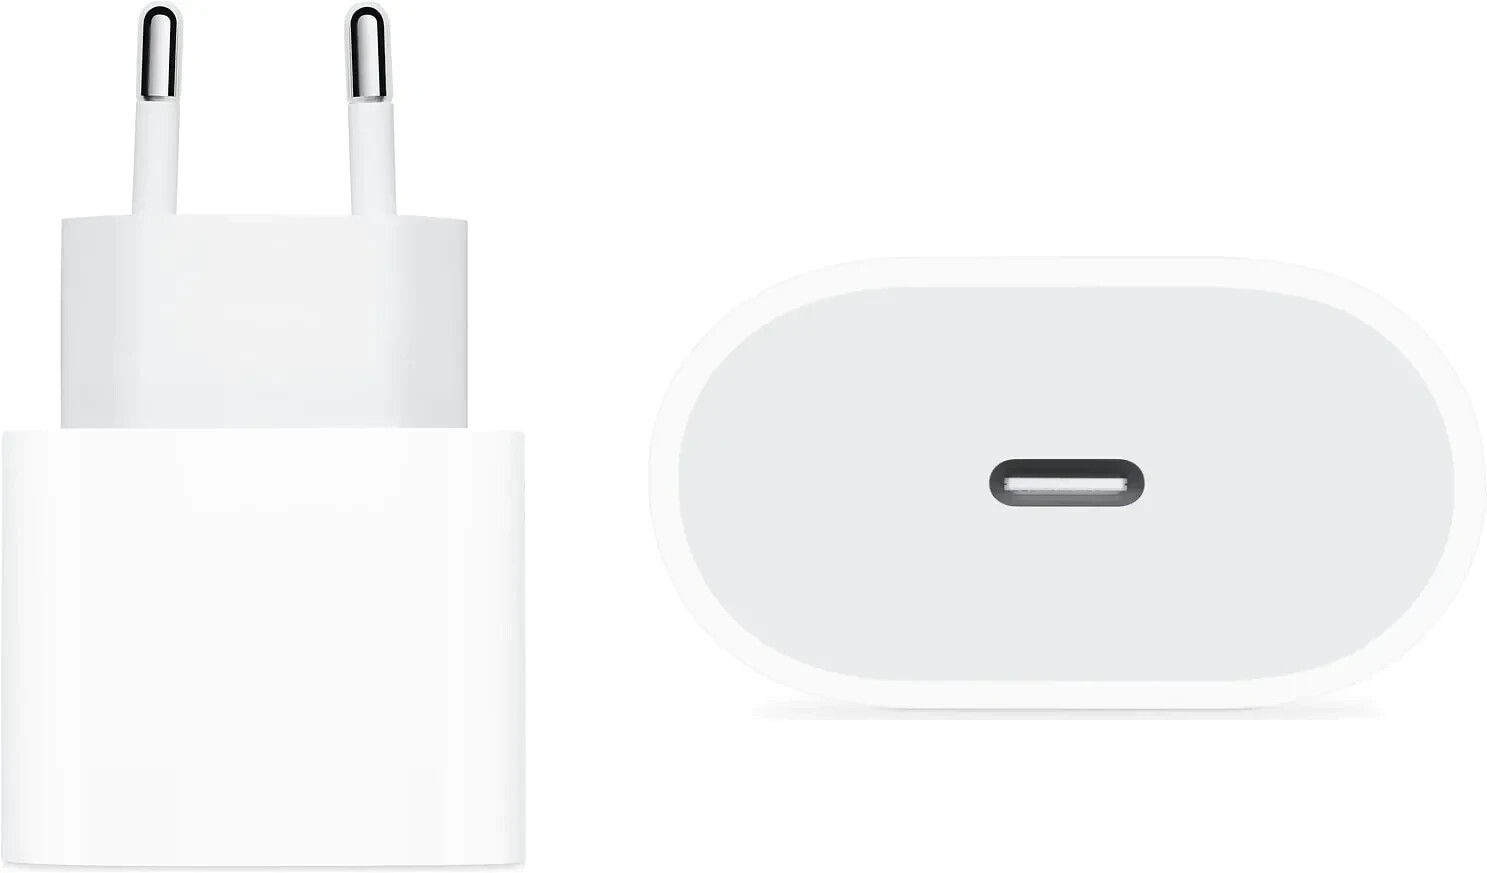 Prise secteur USB-C 20W qualité d'origine Apple